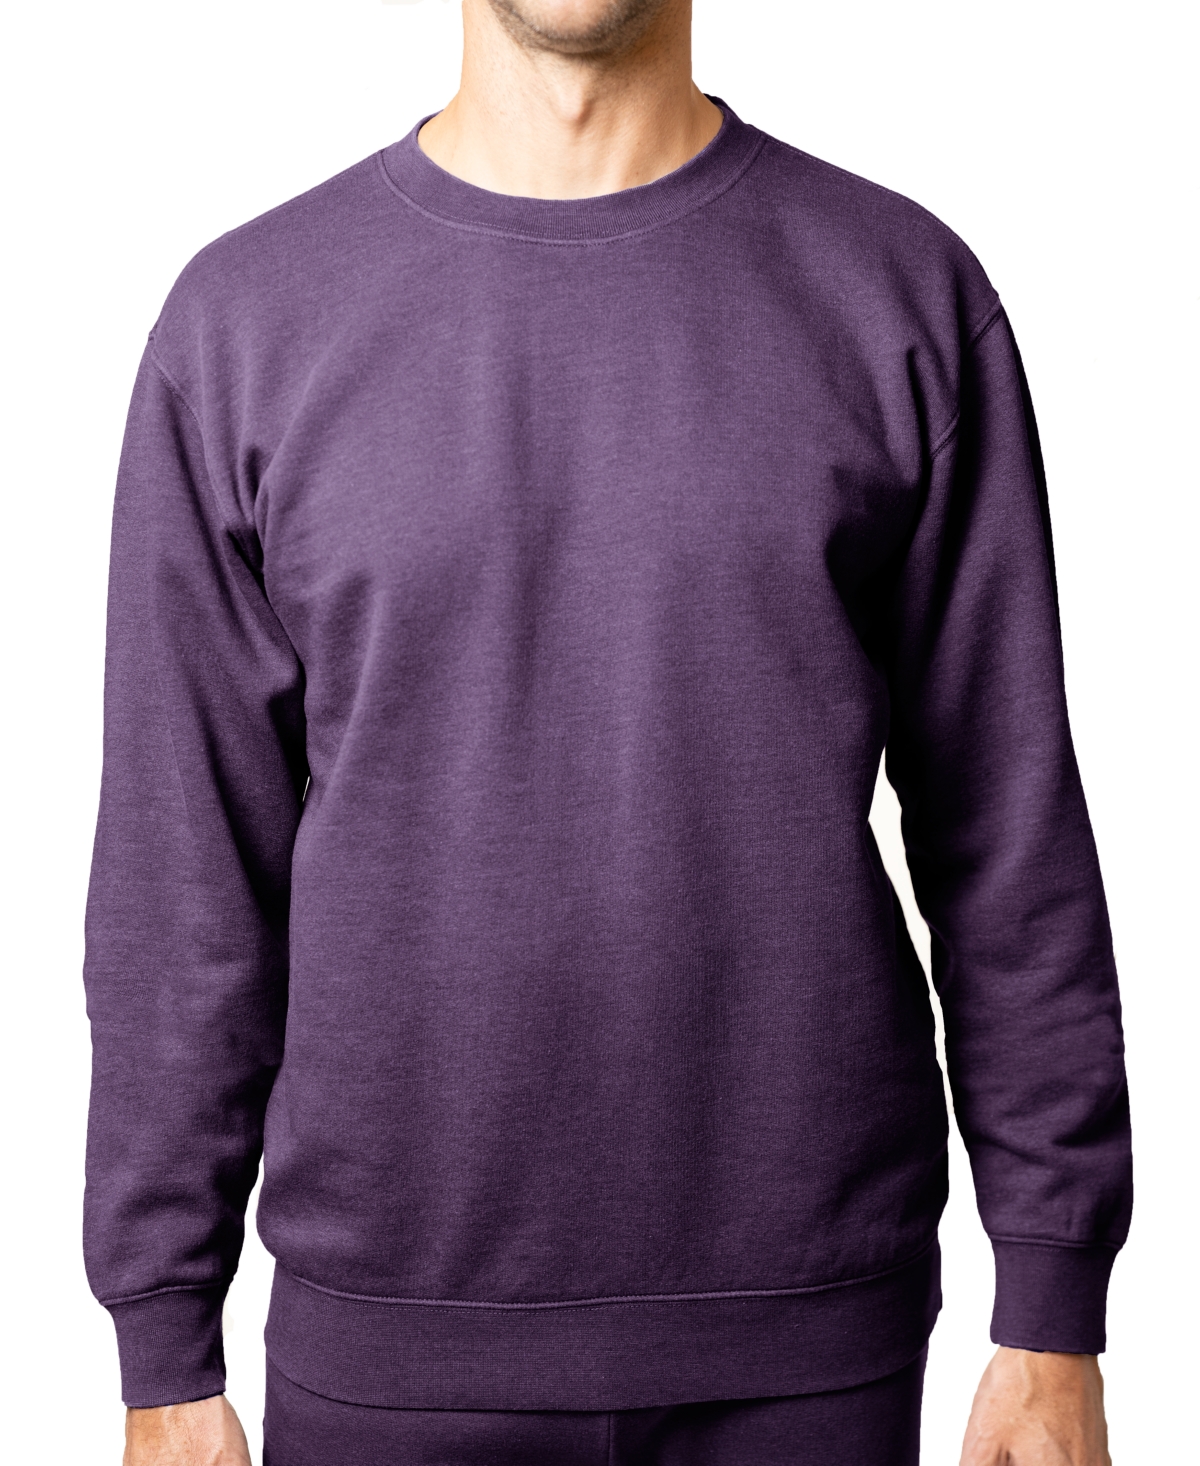 Men's Burnout Fleece Crewneck Sweatshirt - Thyme